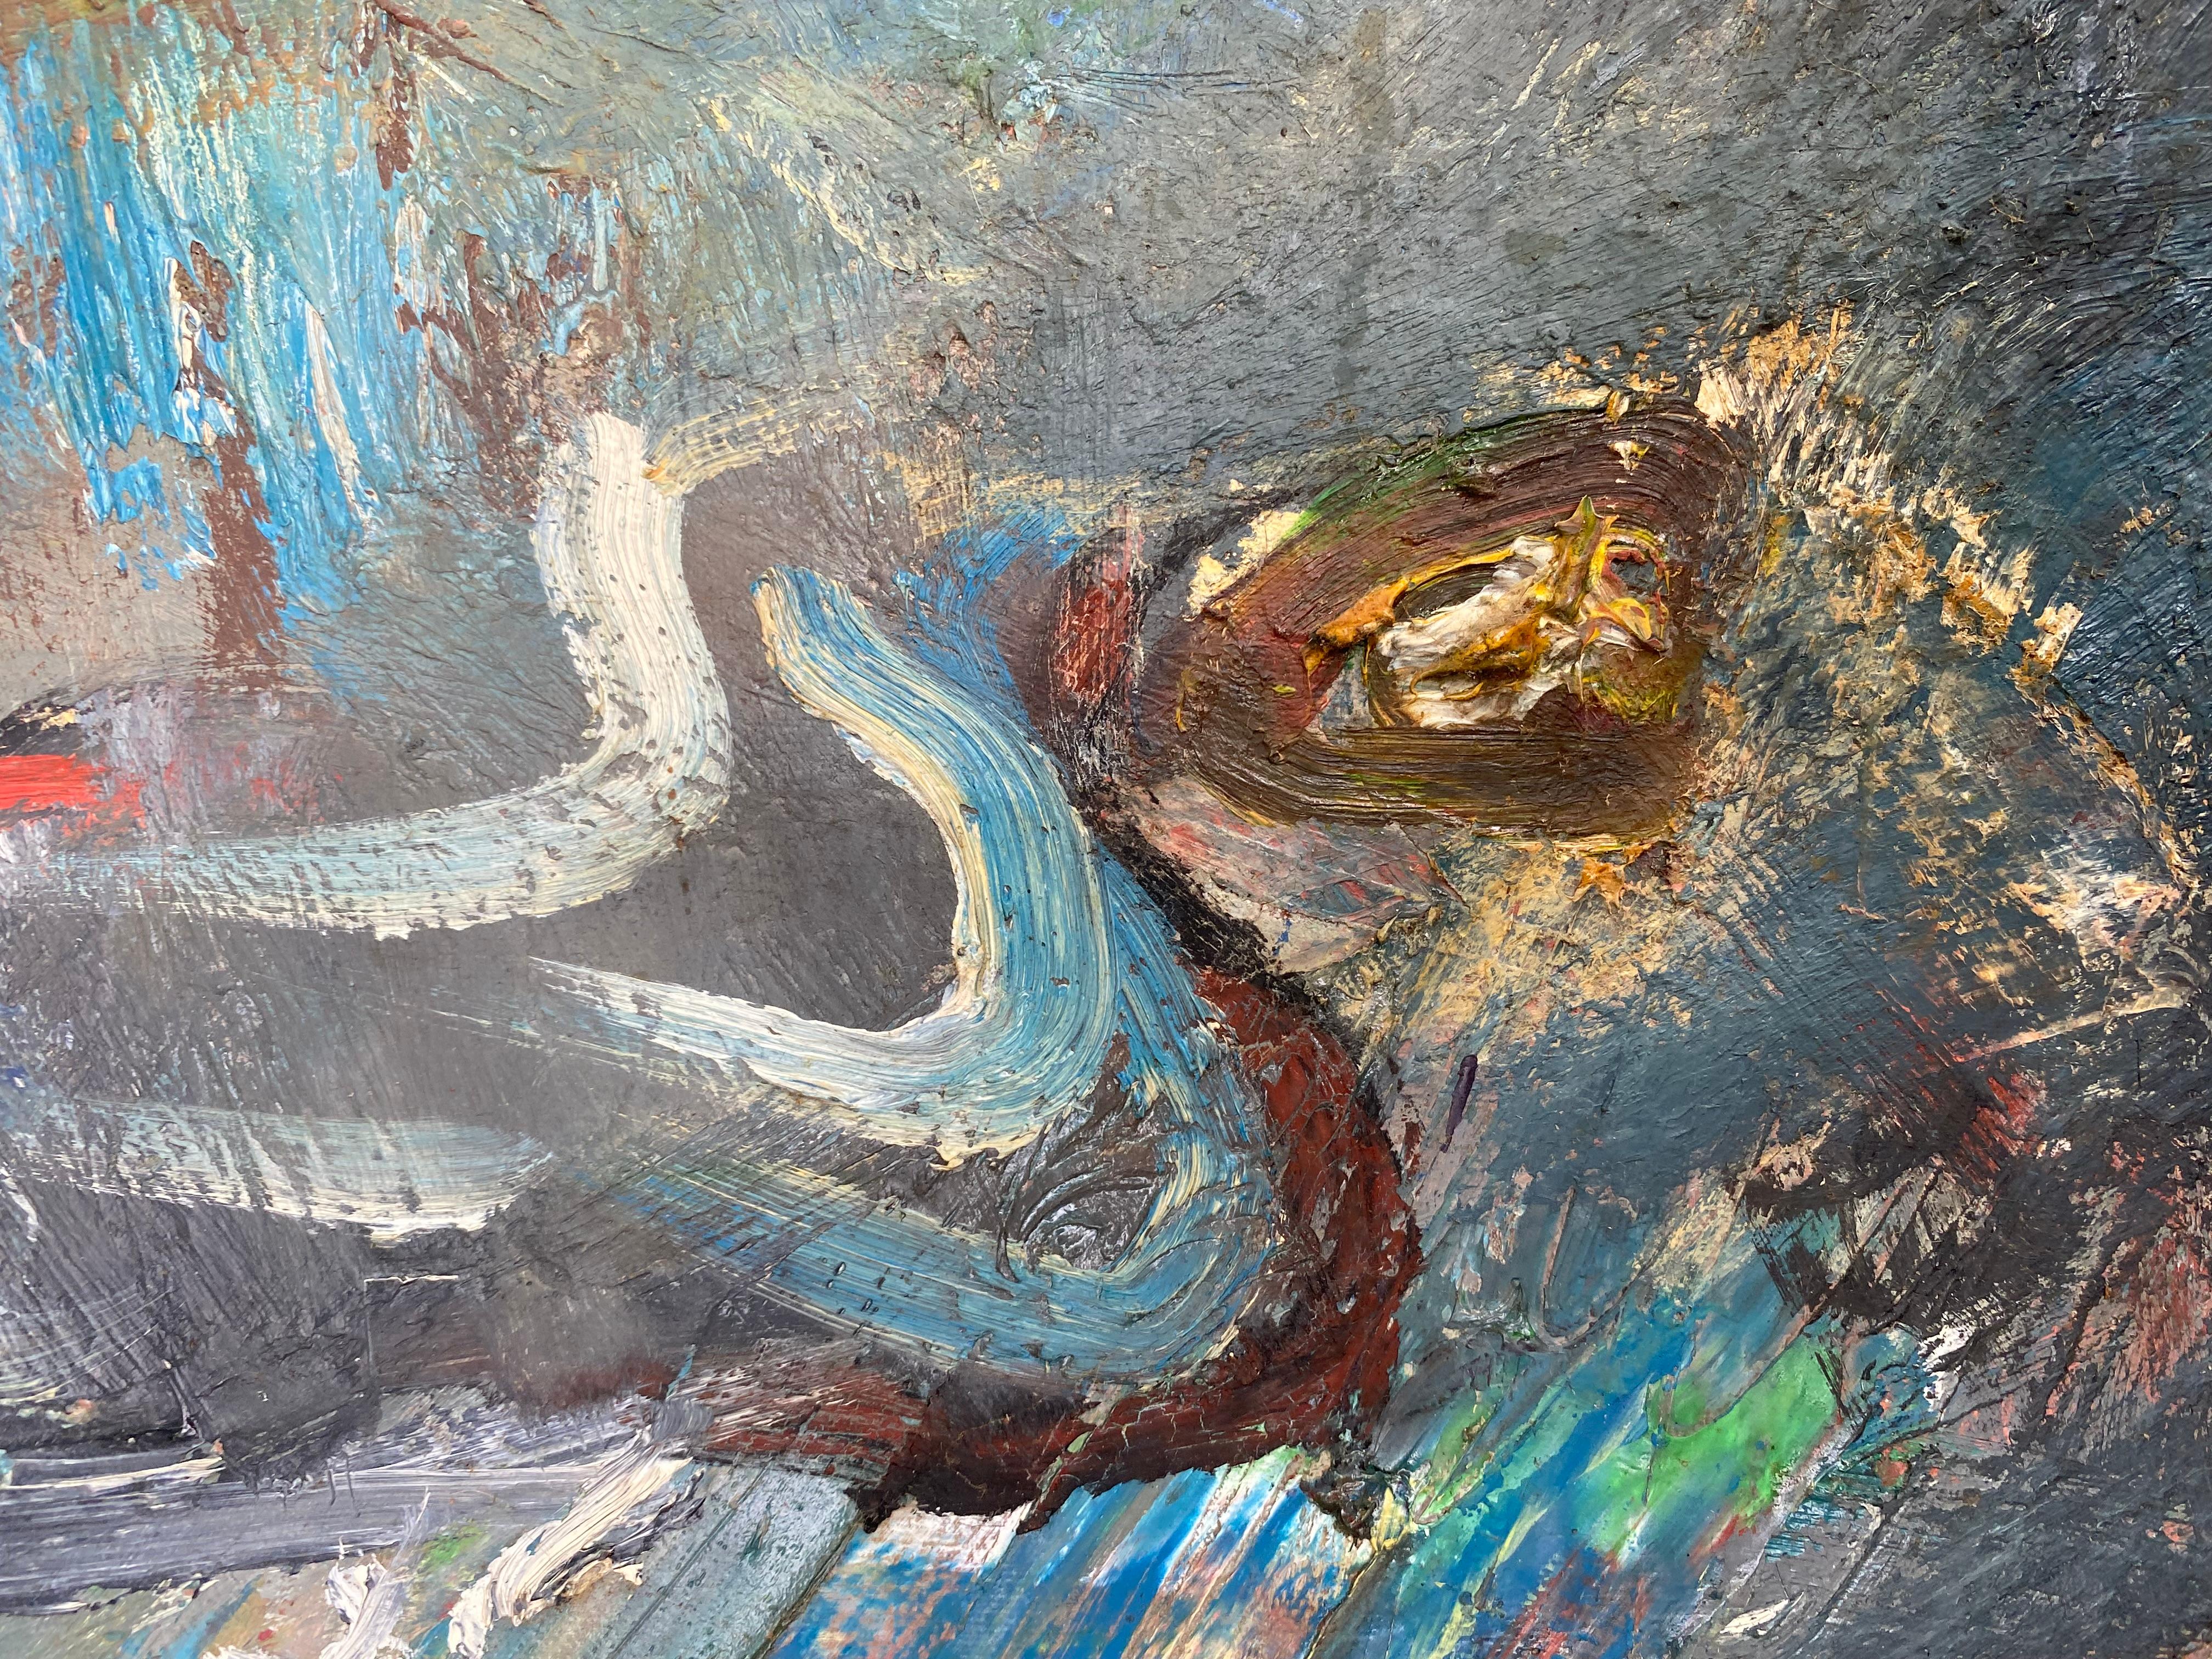 Vintage Warren Fischer figurative abstrakte Malerei auf Leinen Leinwand.

Zum Verkauf angeboten wird ein figuratives abstraktes Gemälde auf Leinen von dem amerikanischen Künstler Warren Fischer (1943-2001). Das Gemälde ist Teil des Nachlasses des